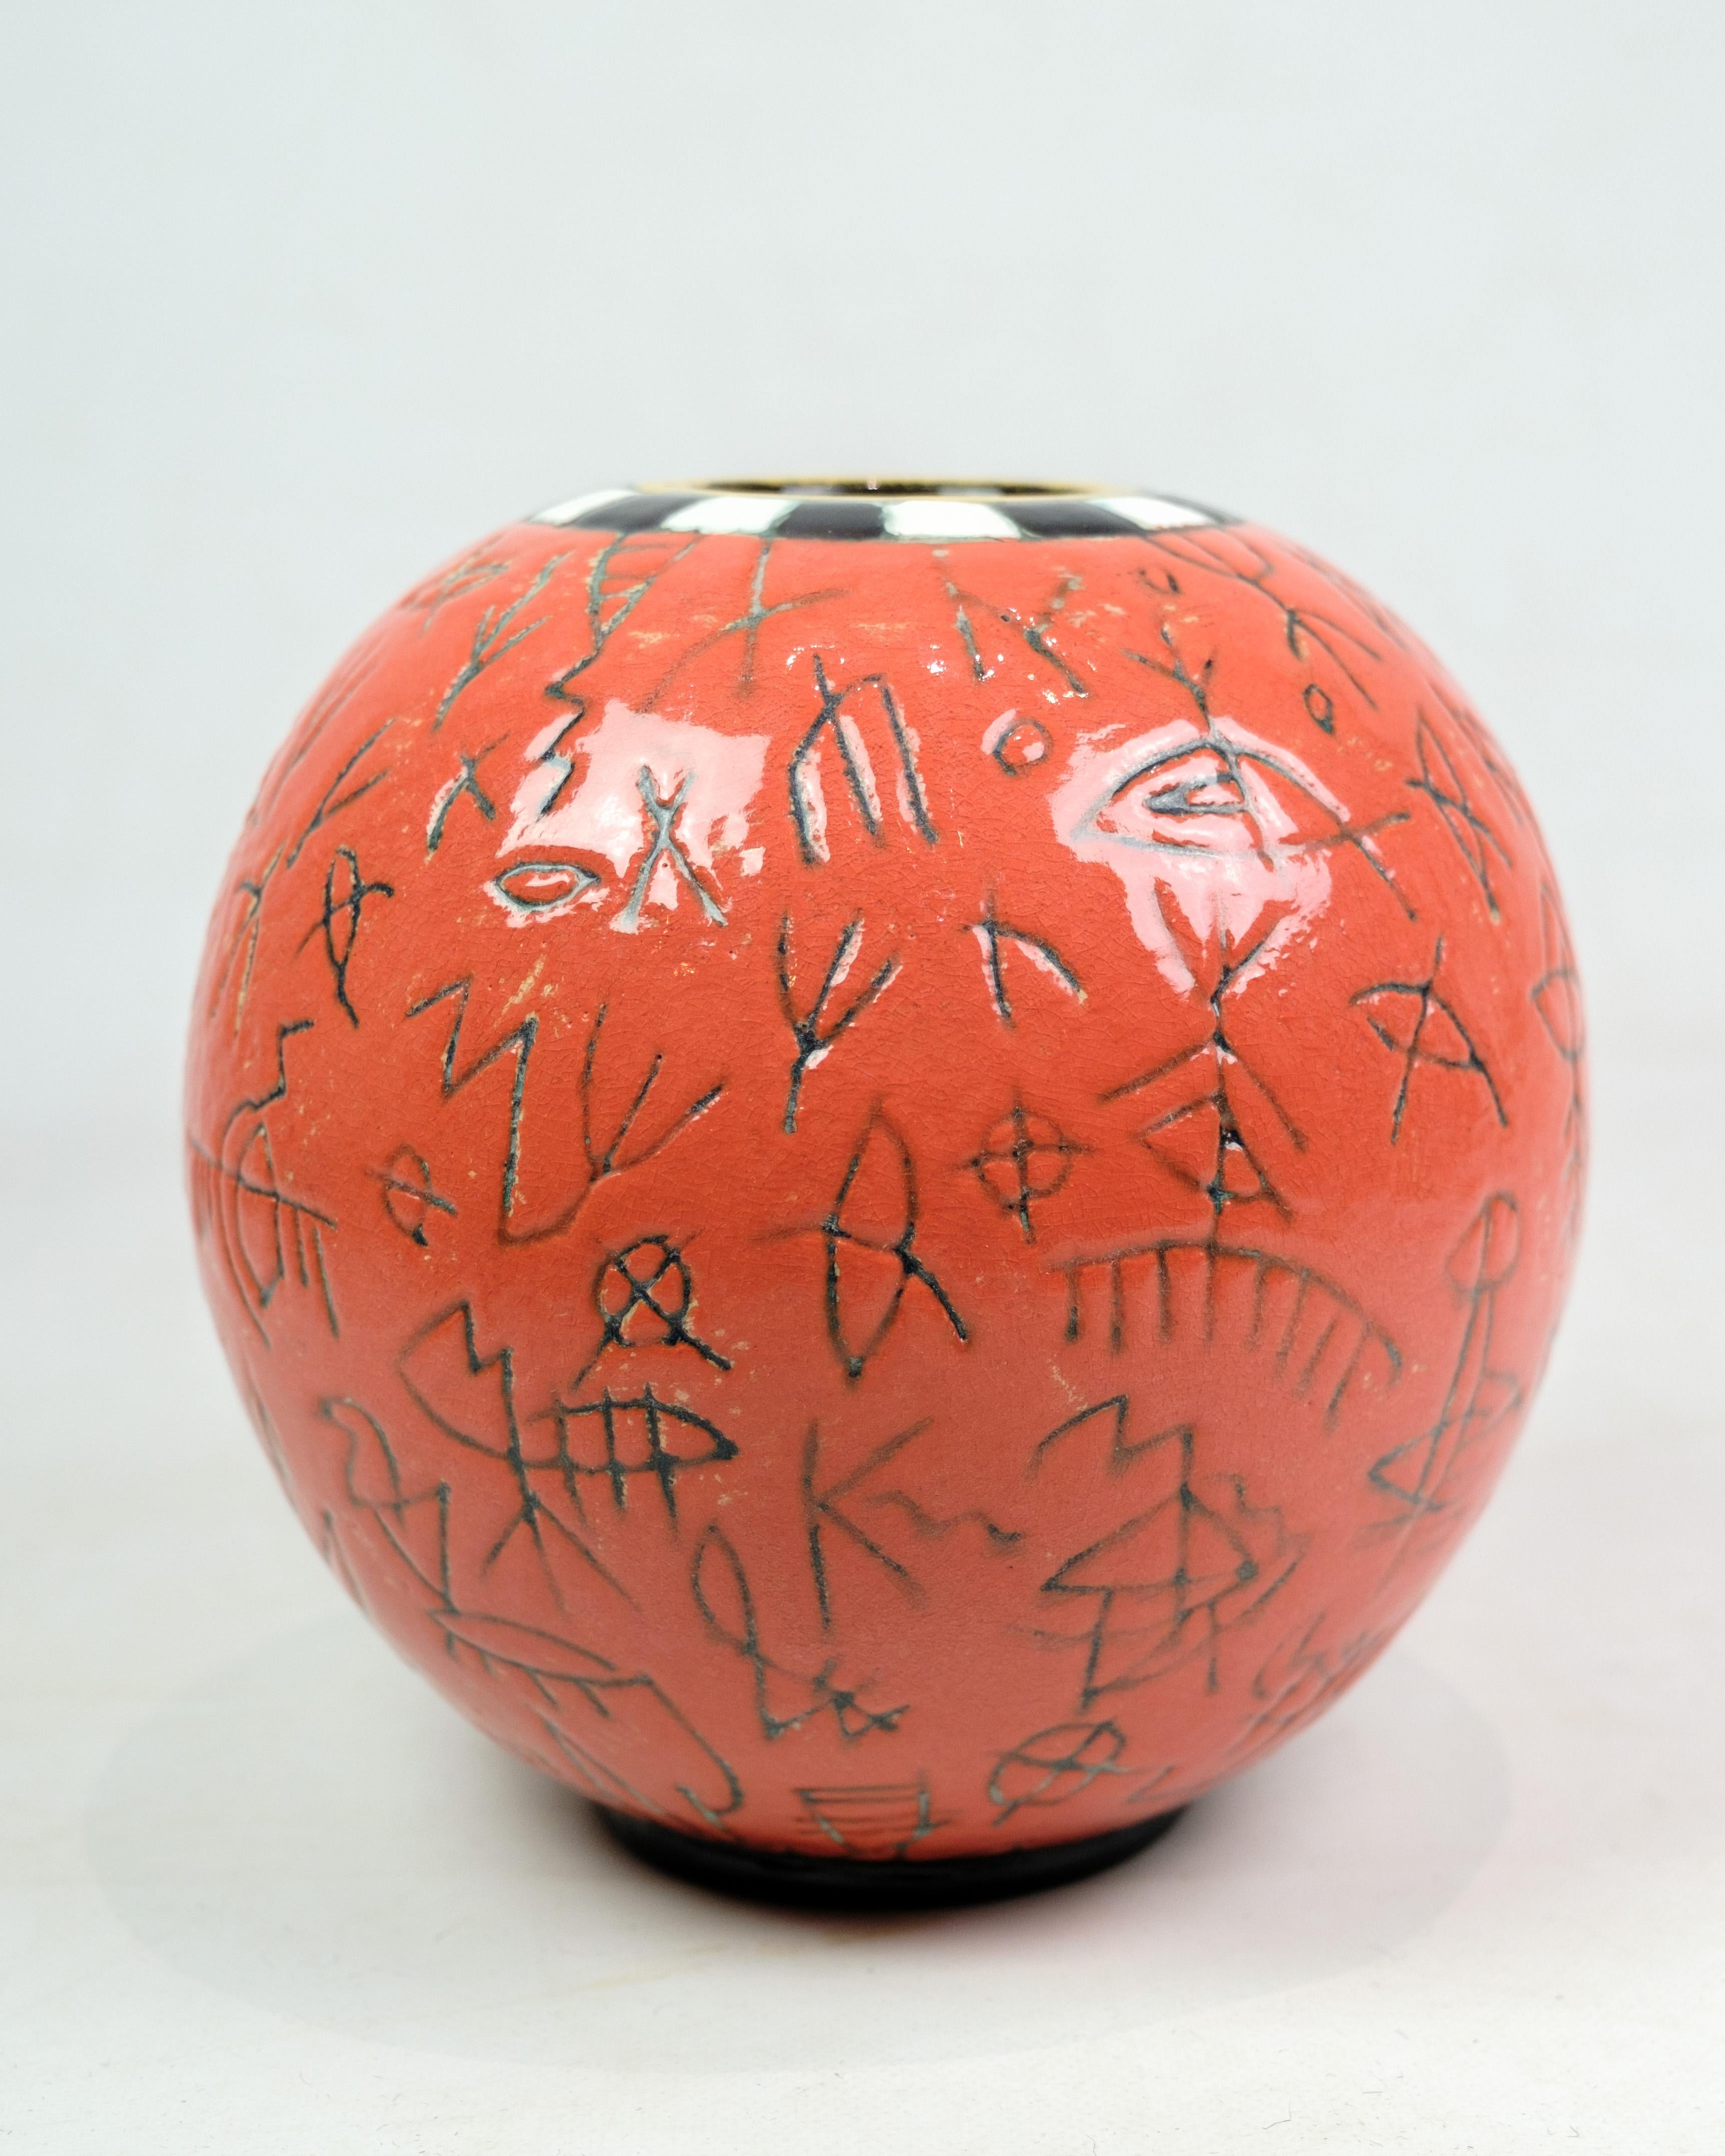 Die runde Vase von Lene Regius mit schwarz-weißem Deckel, orangefarbener Glasur und schwarzer Mustergravur aus den 1980er Jahren repräsentiert eine einzigartige Periode im Keramikdesign. Die Vase kombiniert verschiedene Farben und Muster zu einem